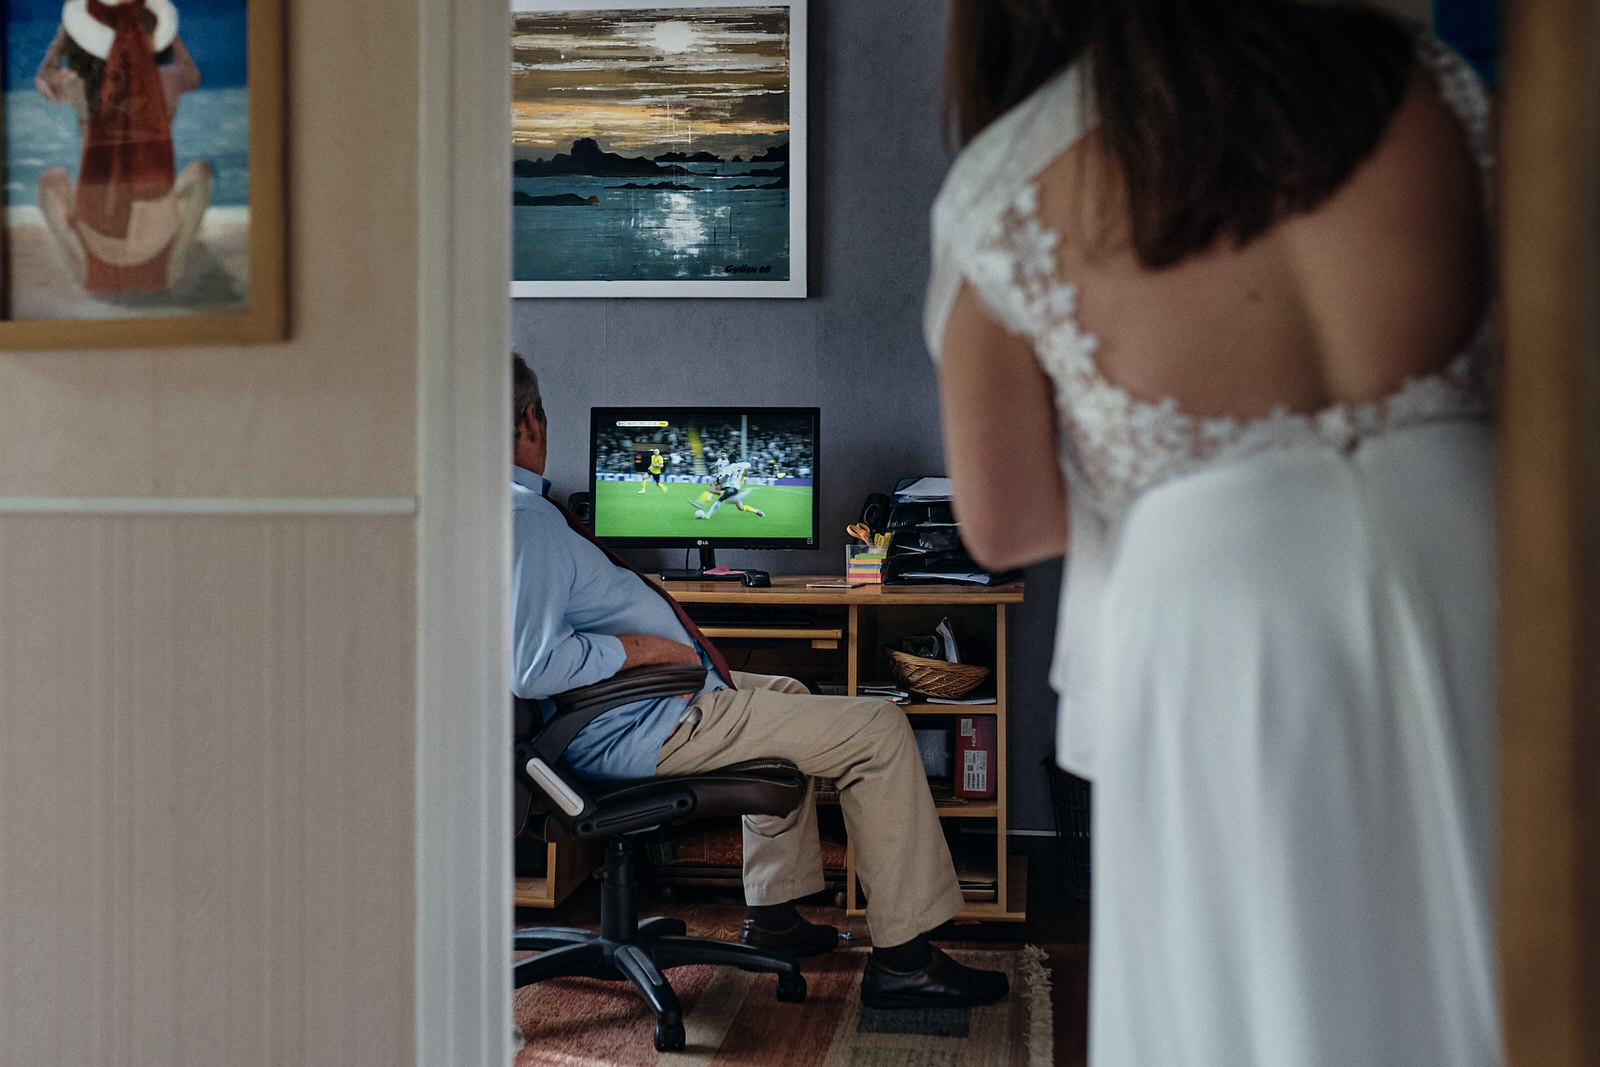 le père de la mariée regarde le foot sur son ordinateur, la mariée le voit